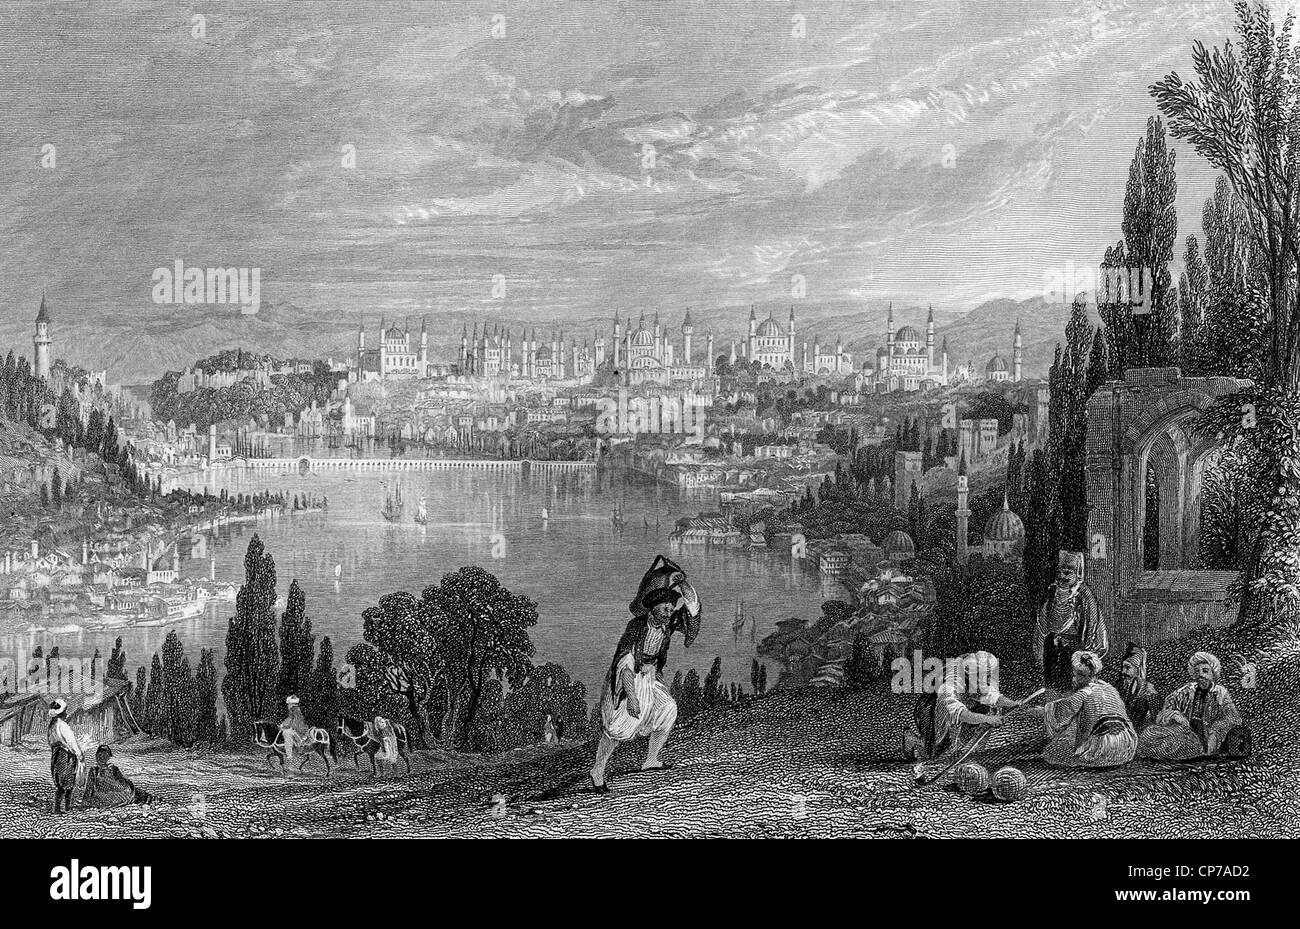 Ansicht des alten Konstantinopel, heute Istanbul, Türkei. Gestochen von William Miller im Jahre 1847. Stockfoto